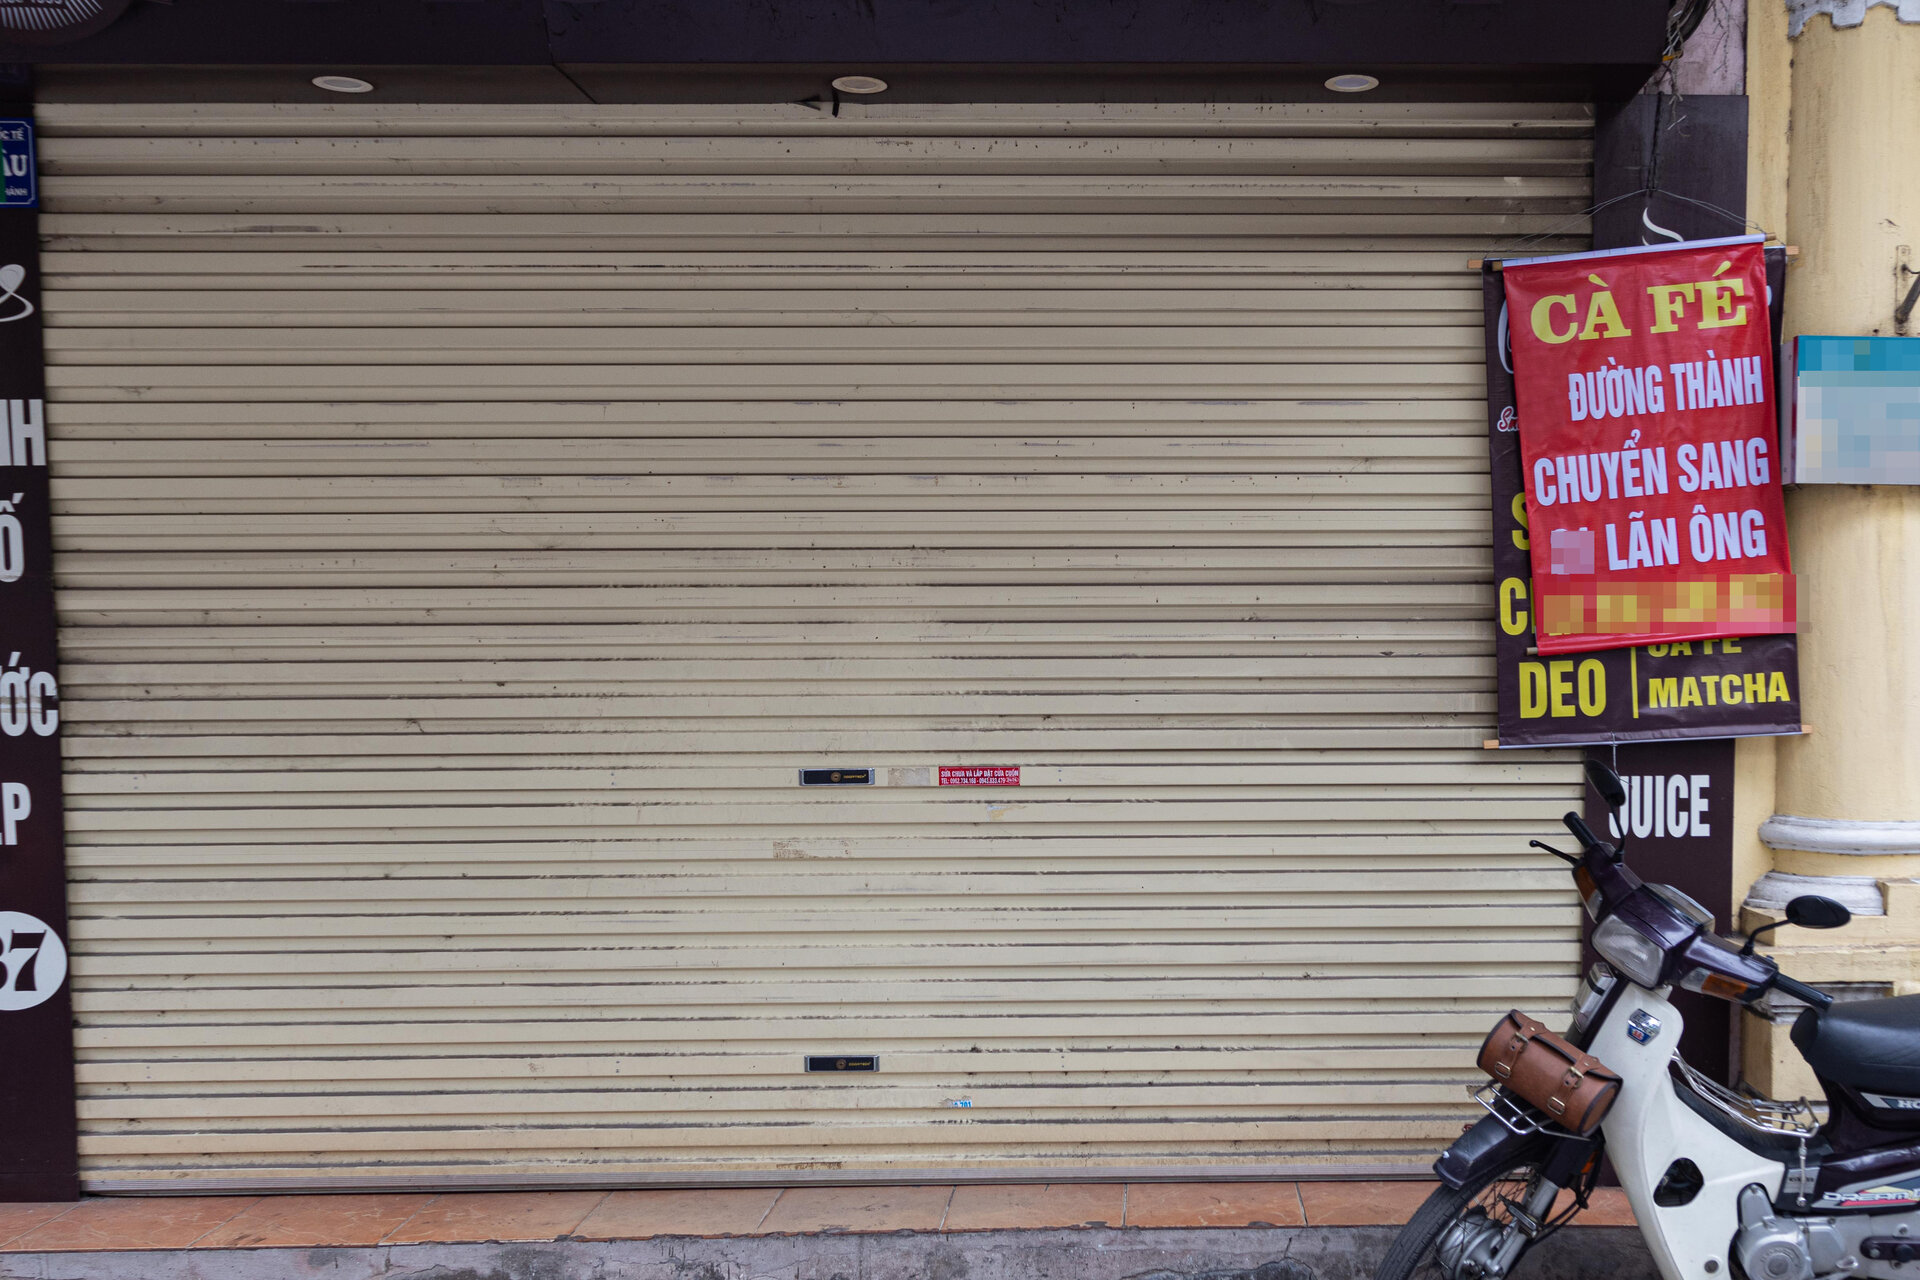 Nhiều cửa hàng giữa phố cổ Hà Nội im lìm đóng cửa, chủ nhà ngóng khách thuê - 11